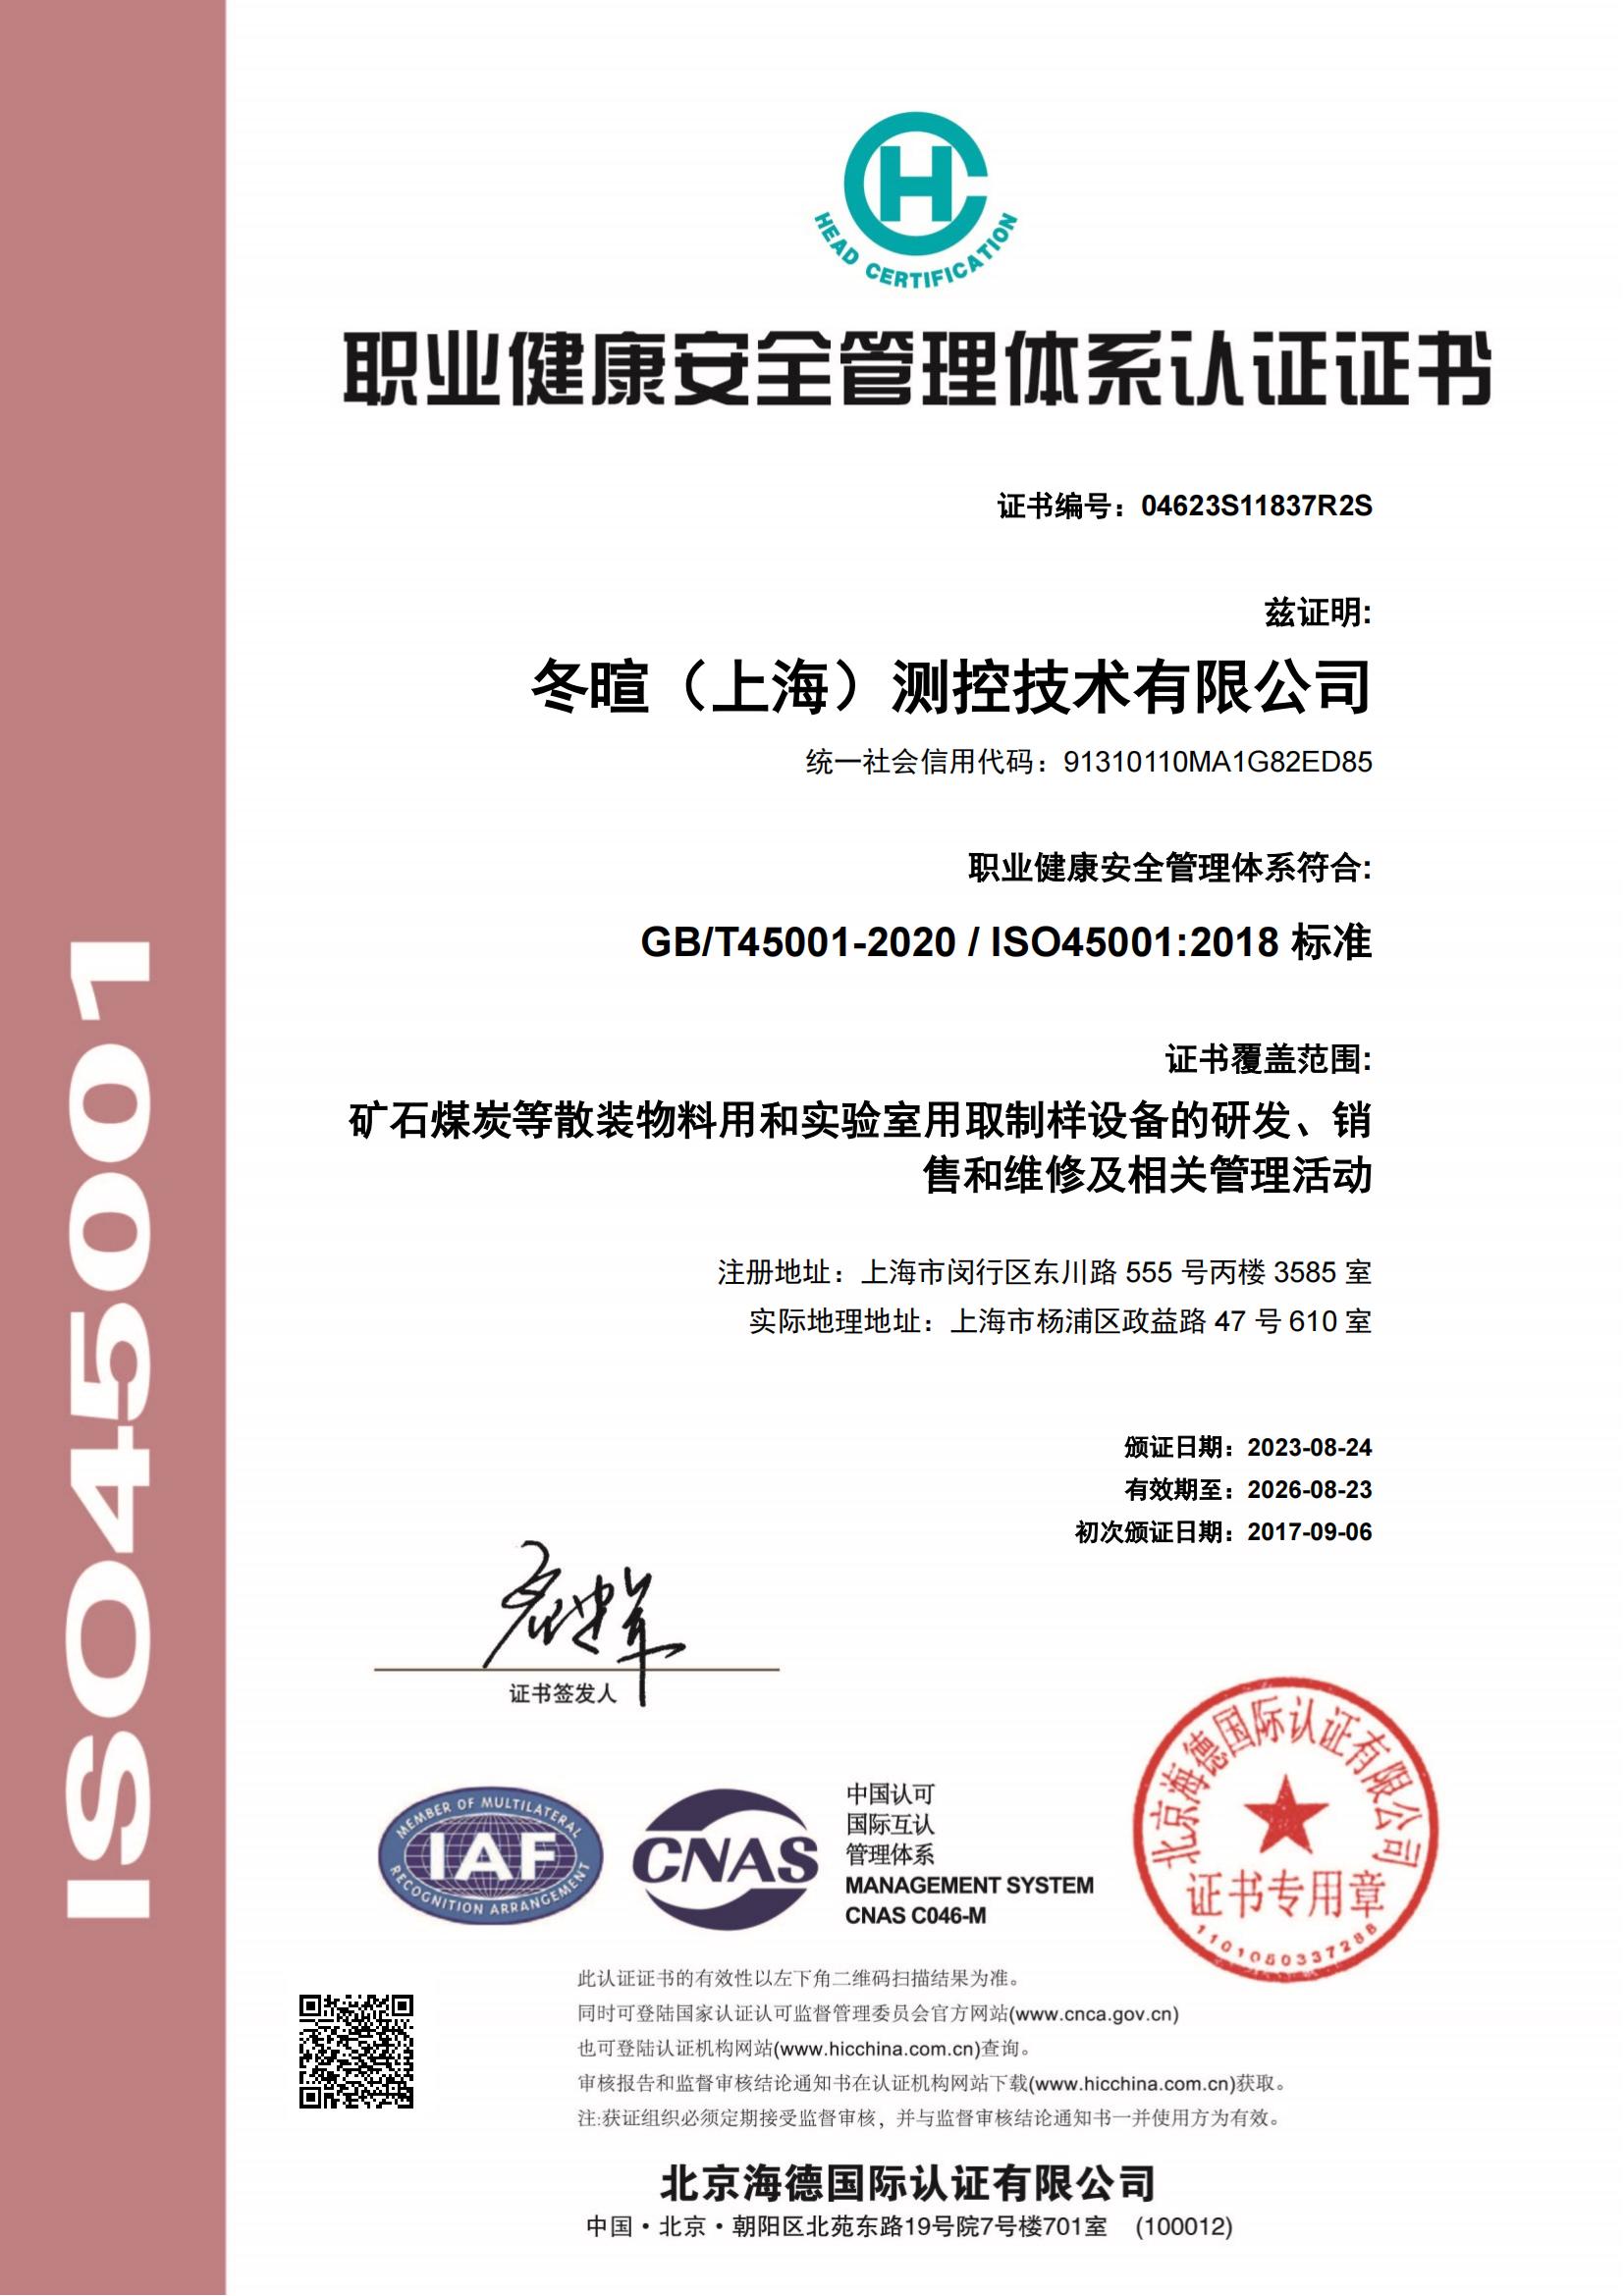 冬暄测控-职业健康安全管理体系认证证书--中文